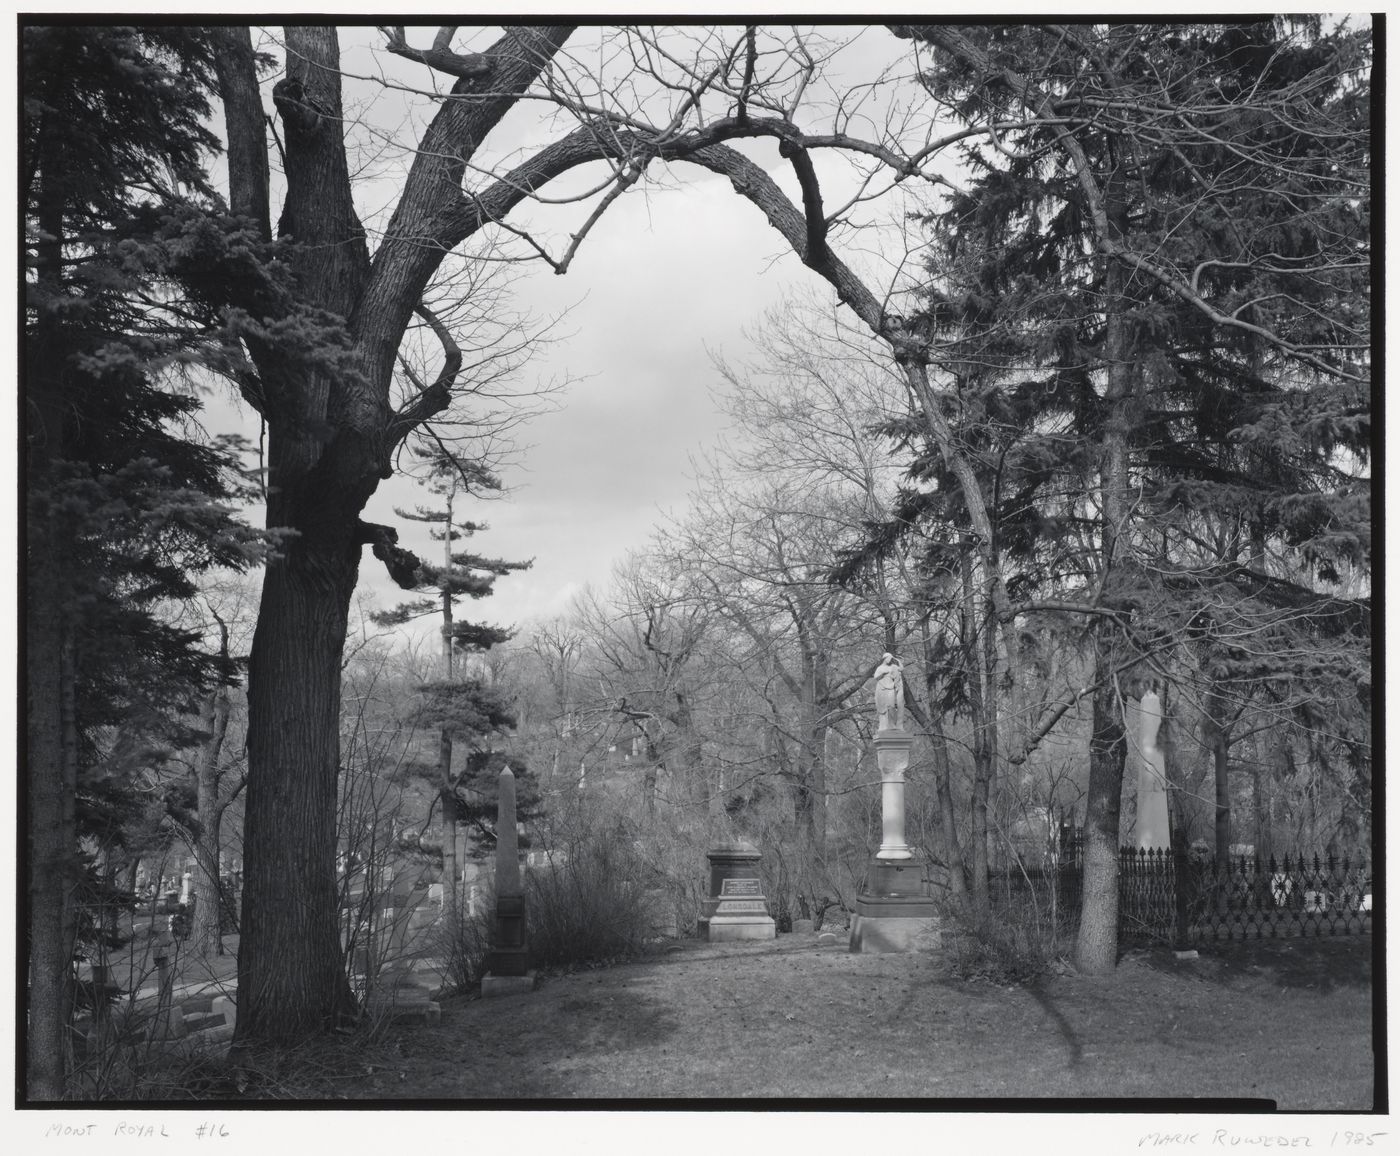 View of Mount Royal Cemetery showing tombstones, 1297 chemin de la Forêt, Montréal, Québec